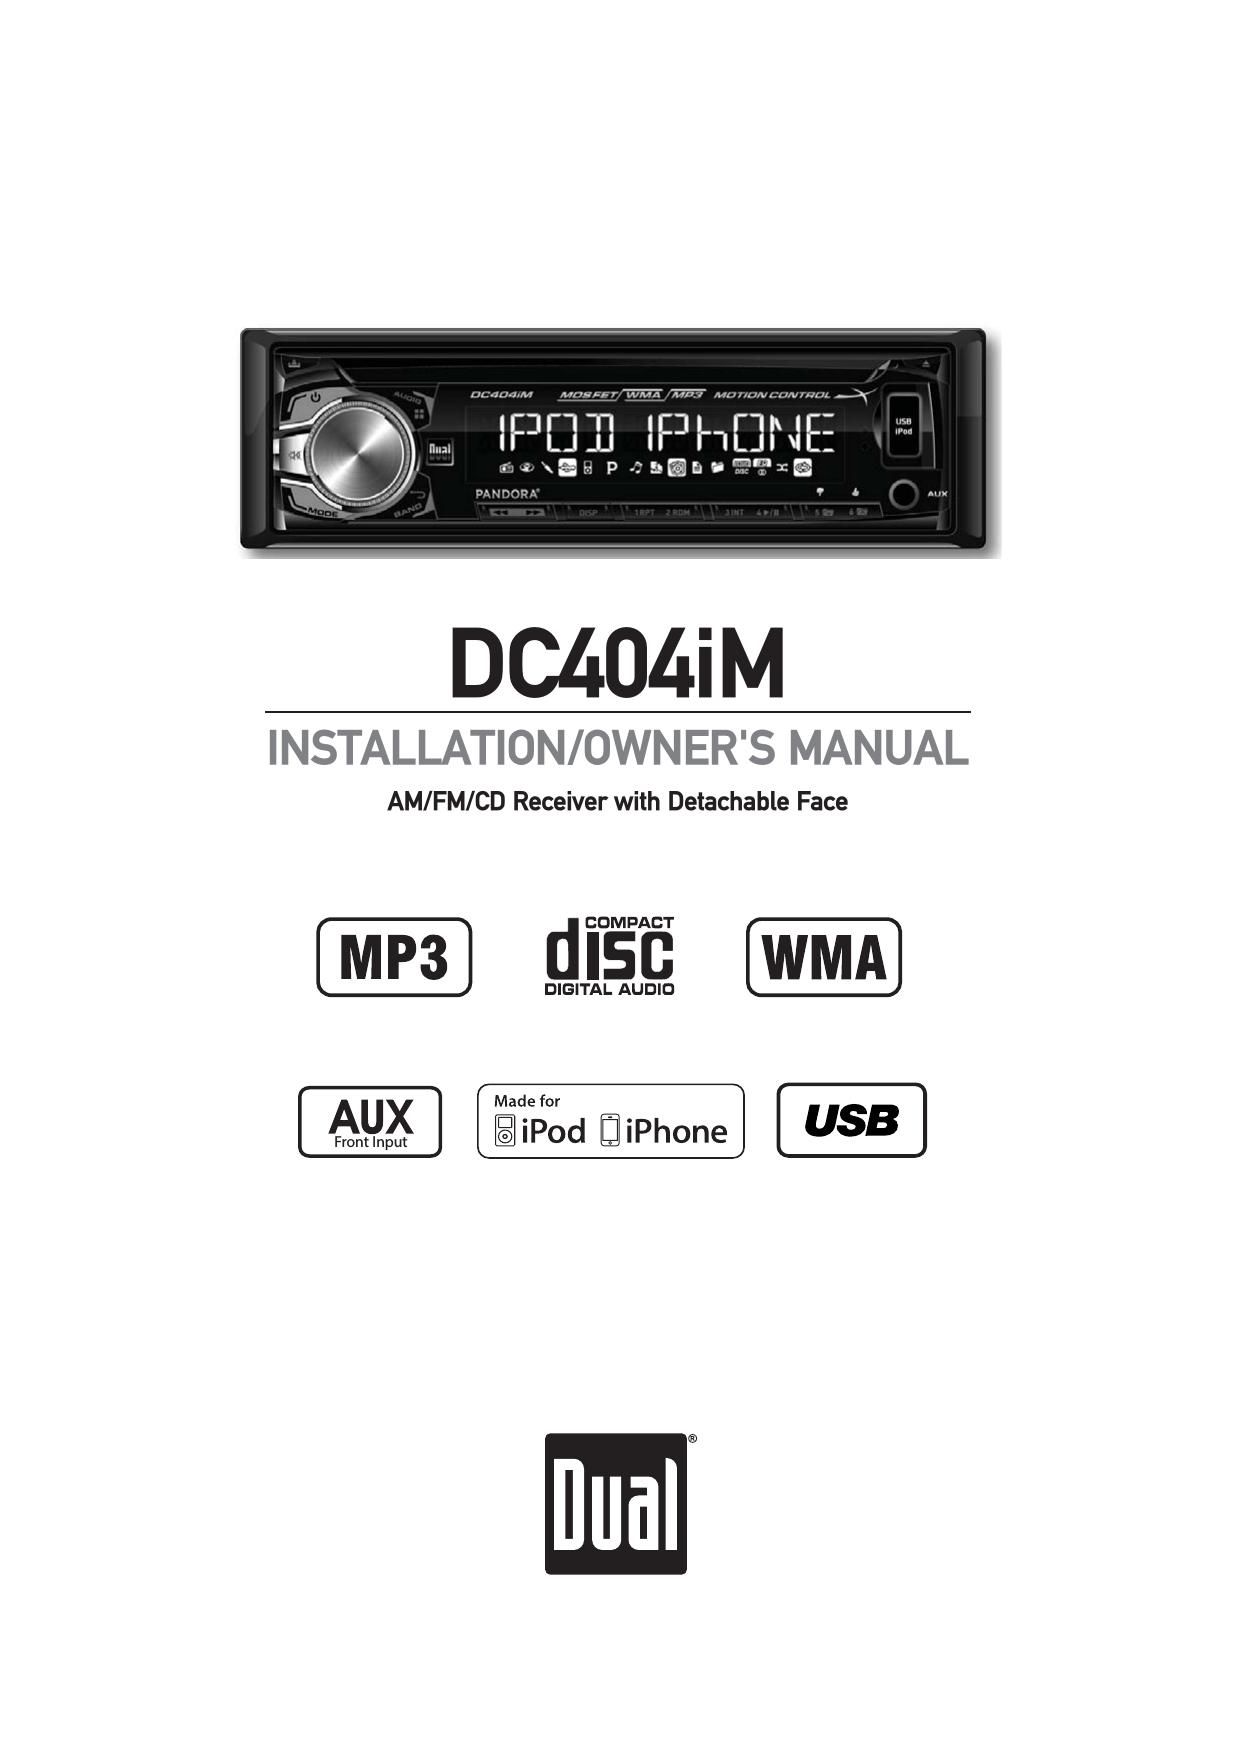 Dual DC 404IM Owners Manual